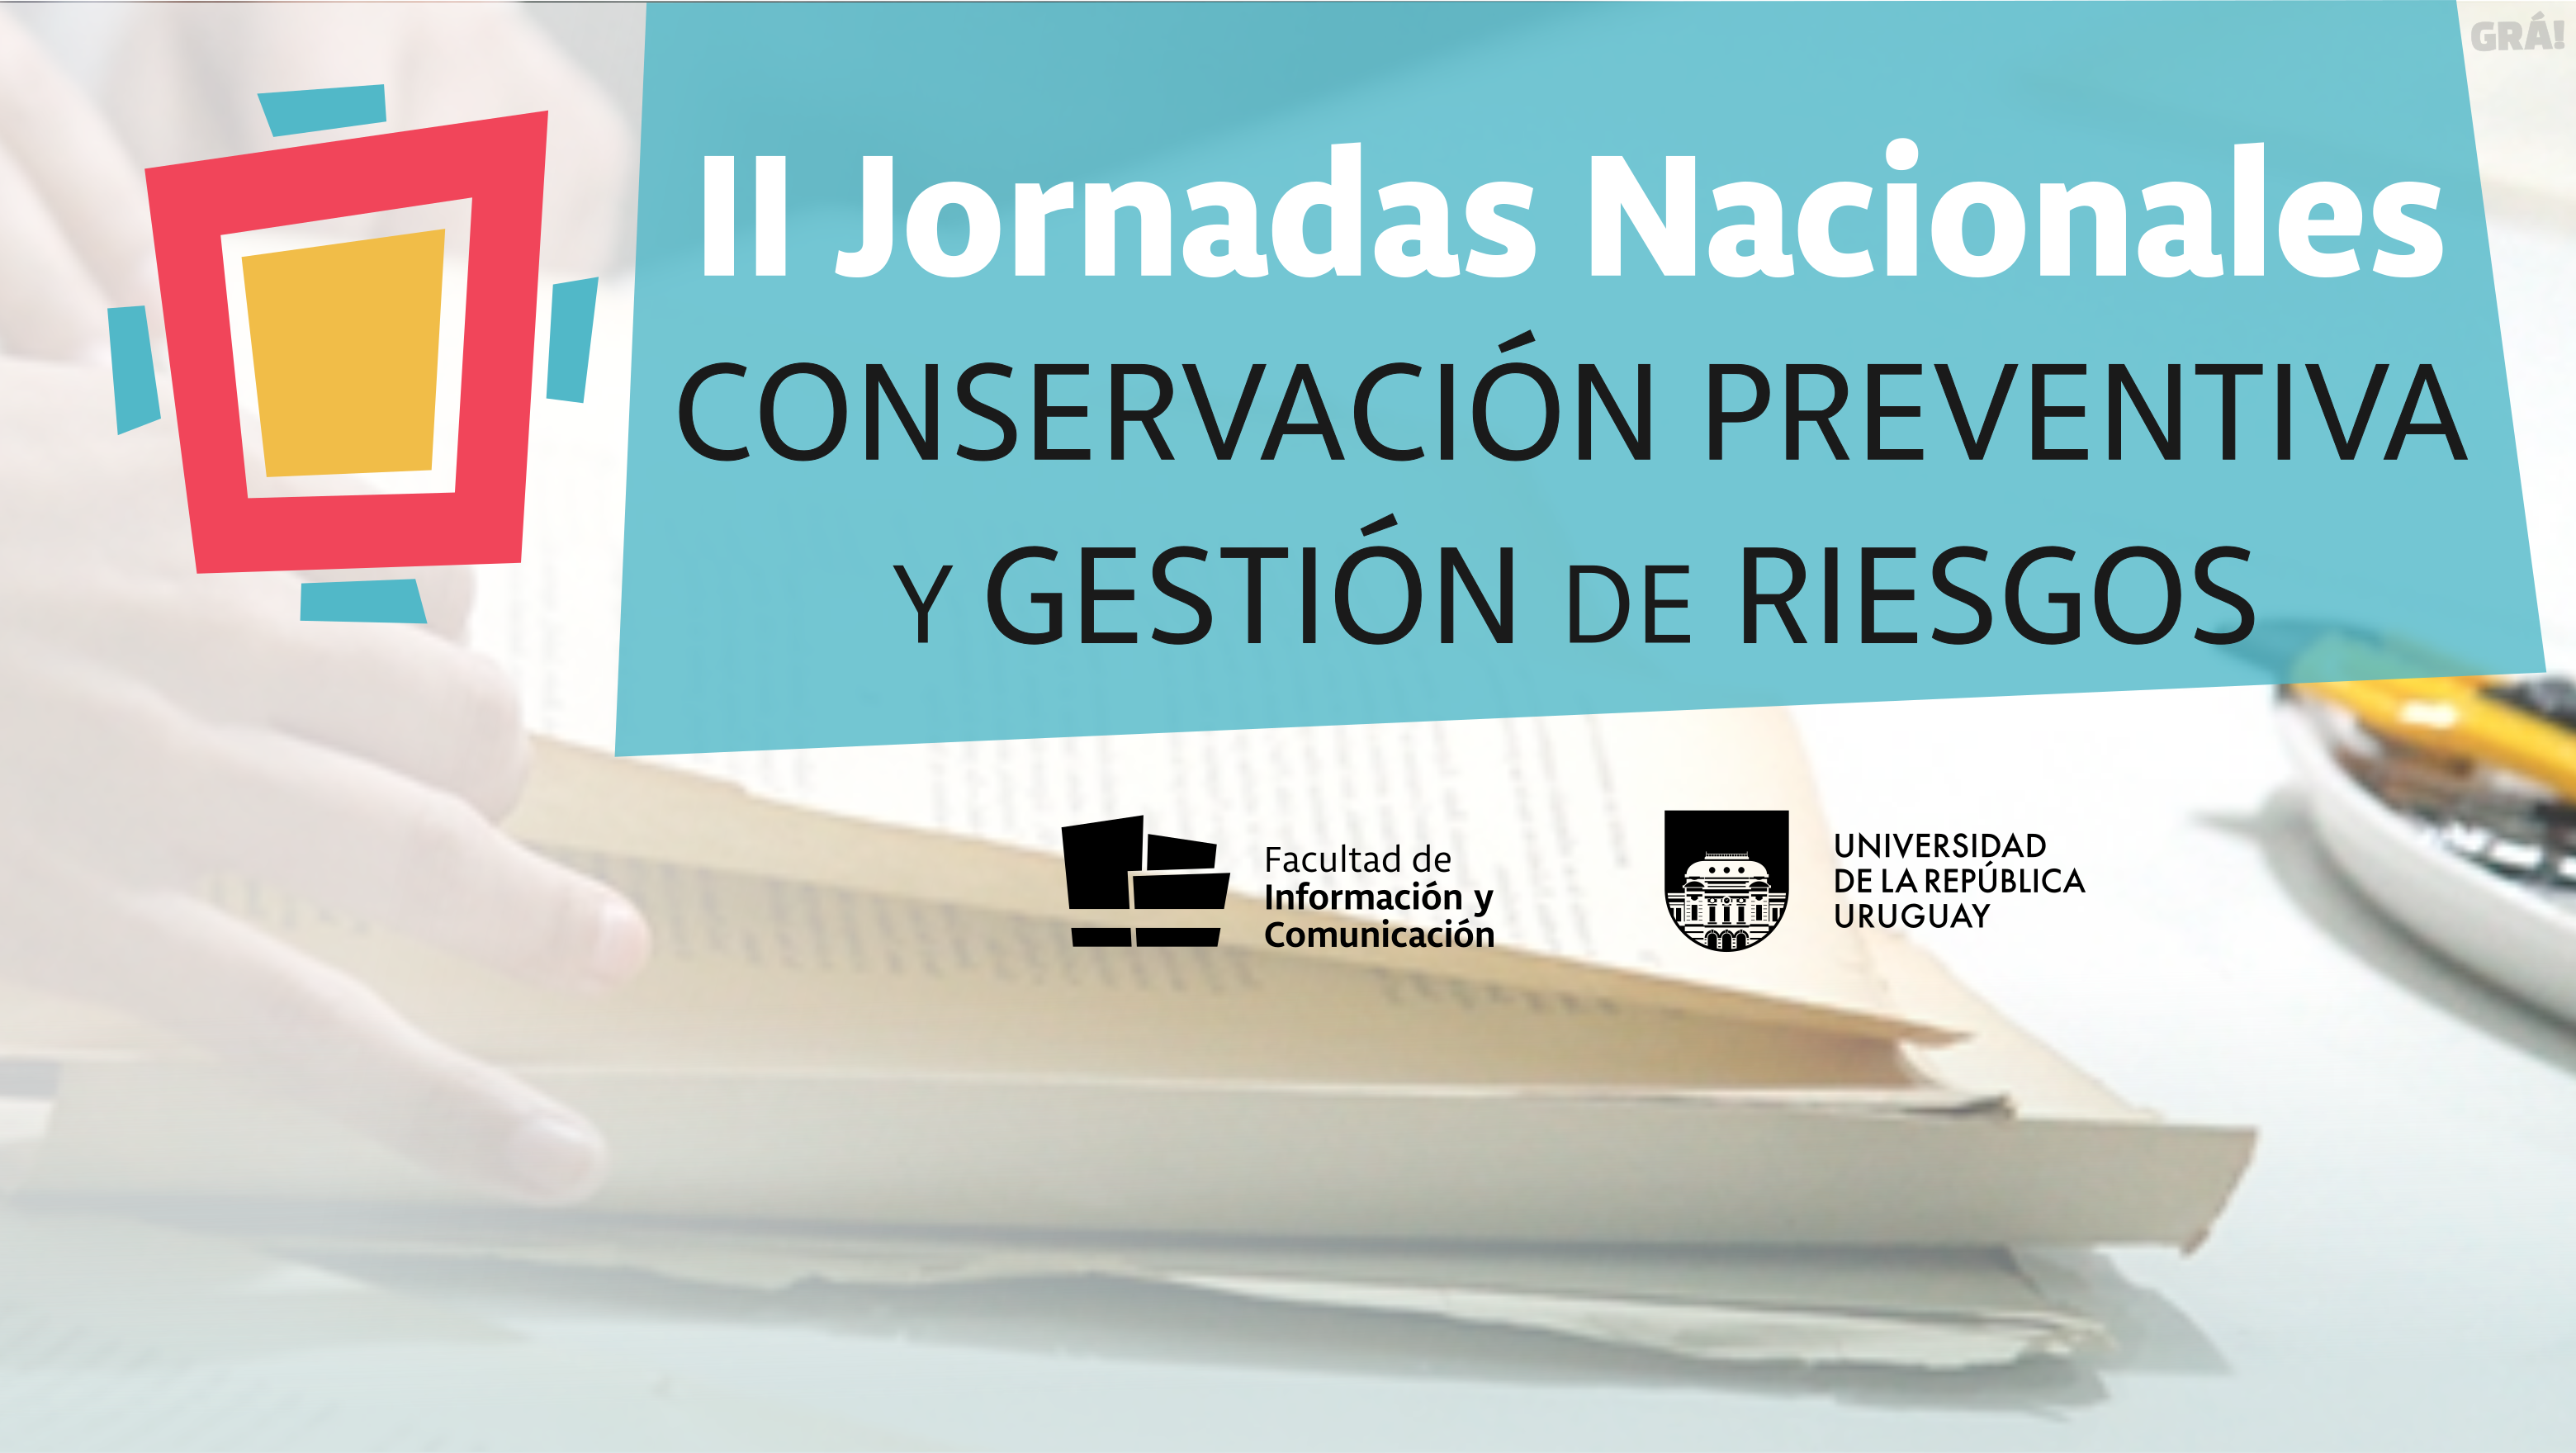 II Jornadas Nacionales de Conservación Preventiva y Gestión de Riesgo